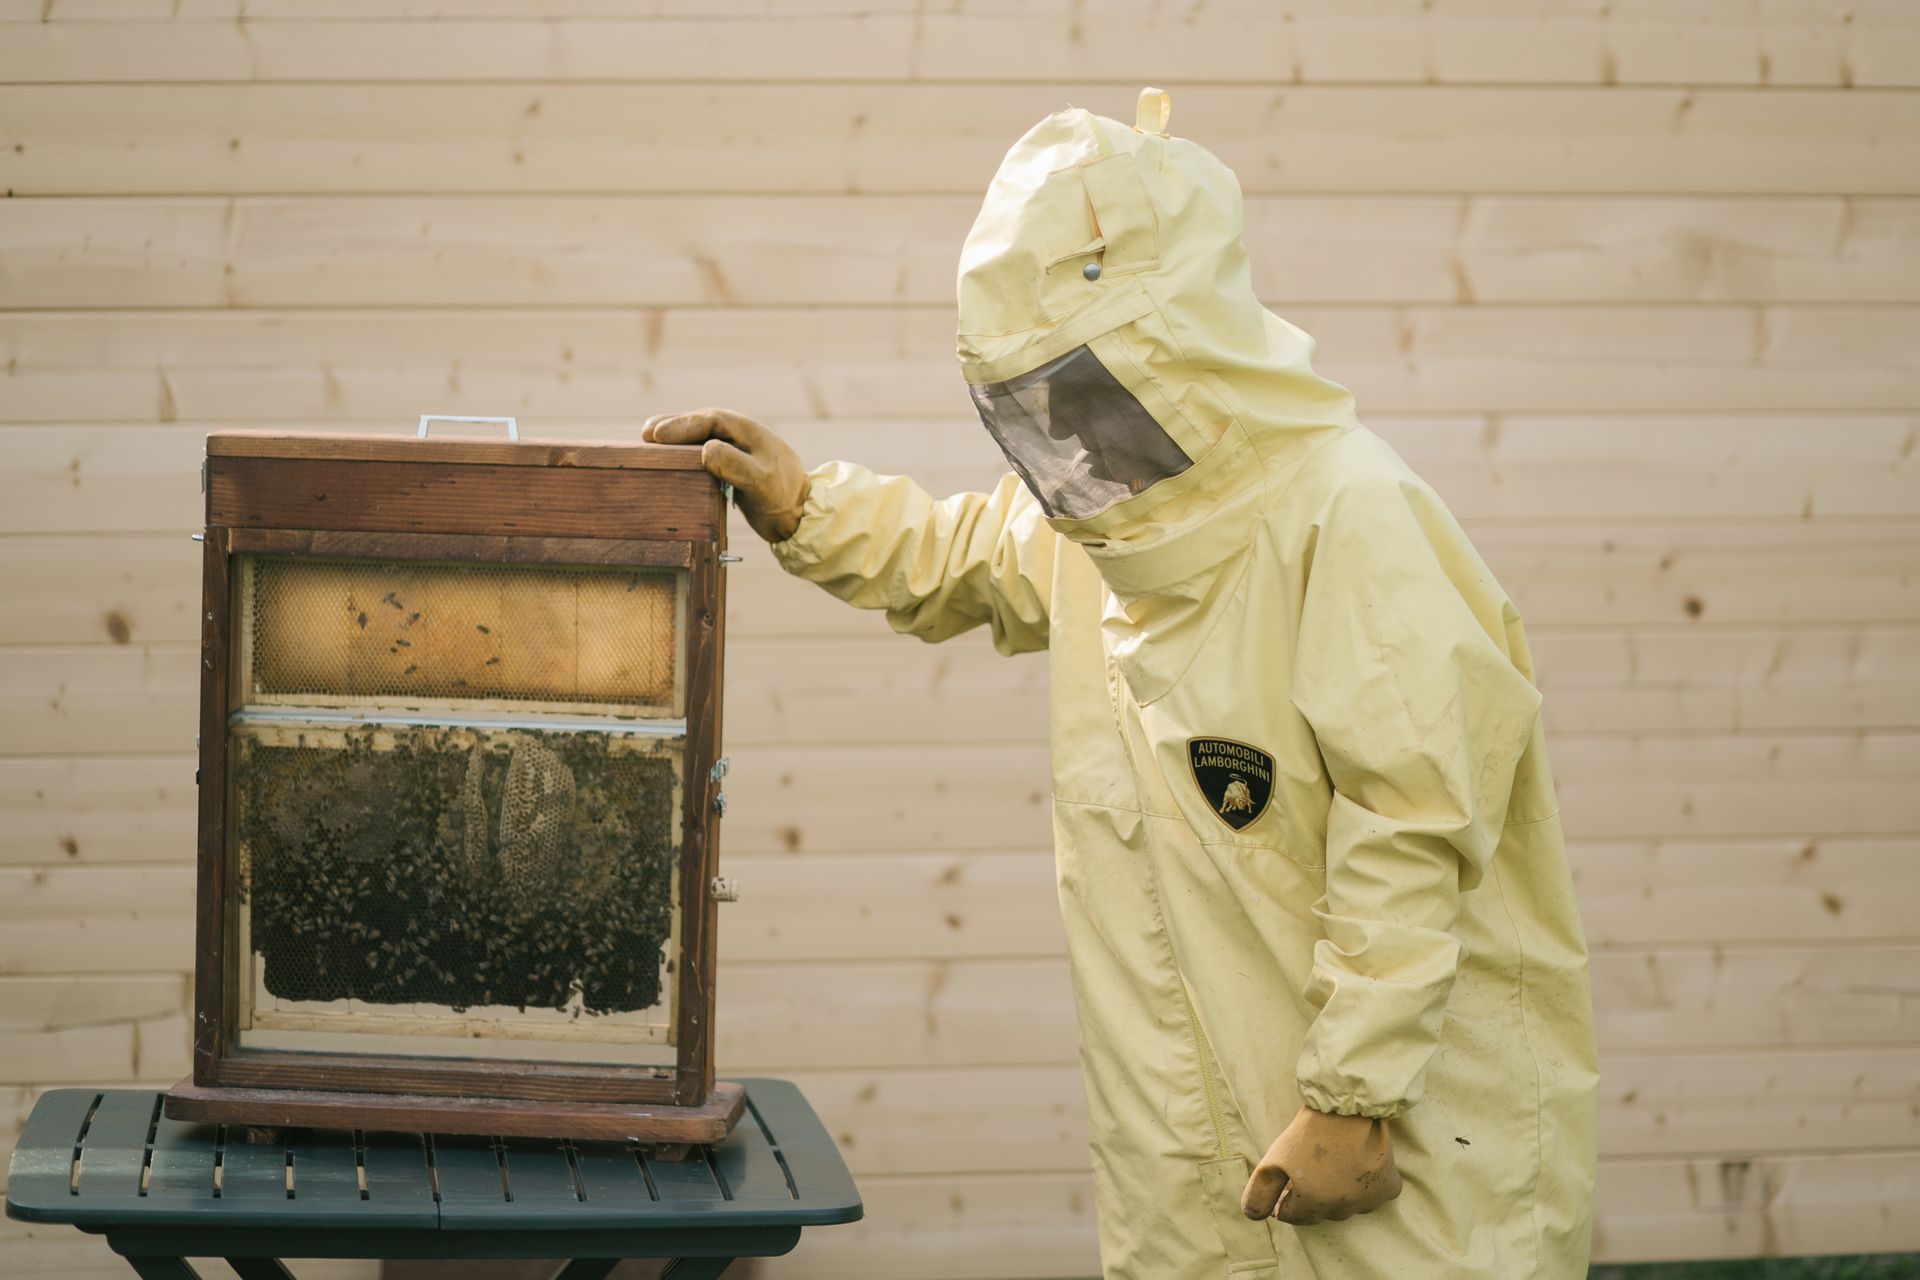 Un opérateur Lamborghini aux prises avec une ruche de la ruche technologique de Sant'Agata Bolognese avec douze ruches et une population d'environ 600.000 XNUMX insectes